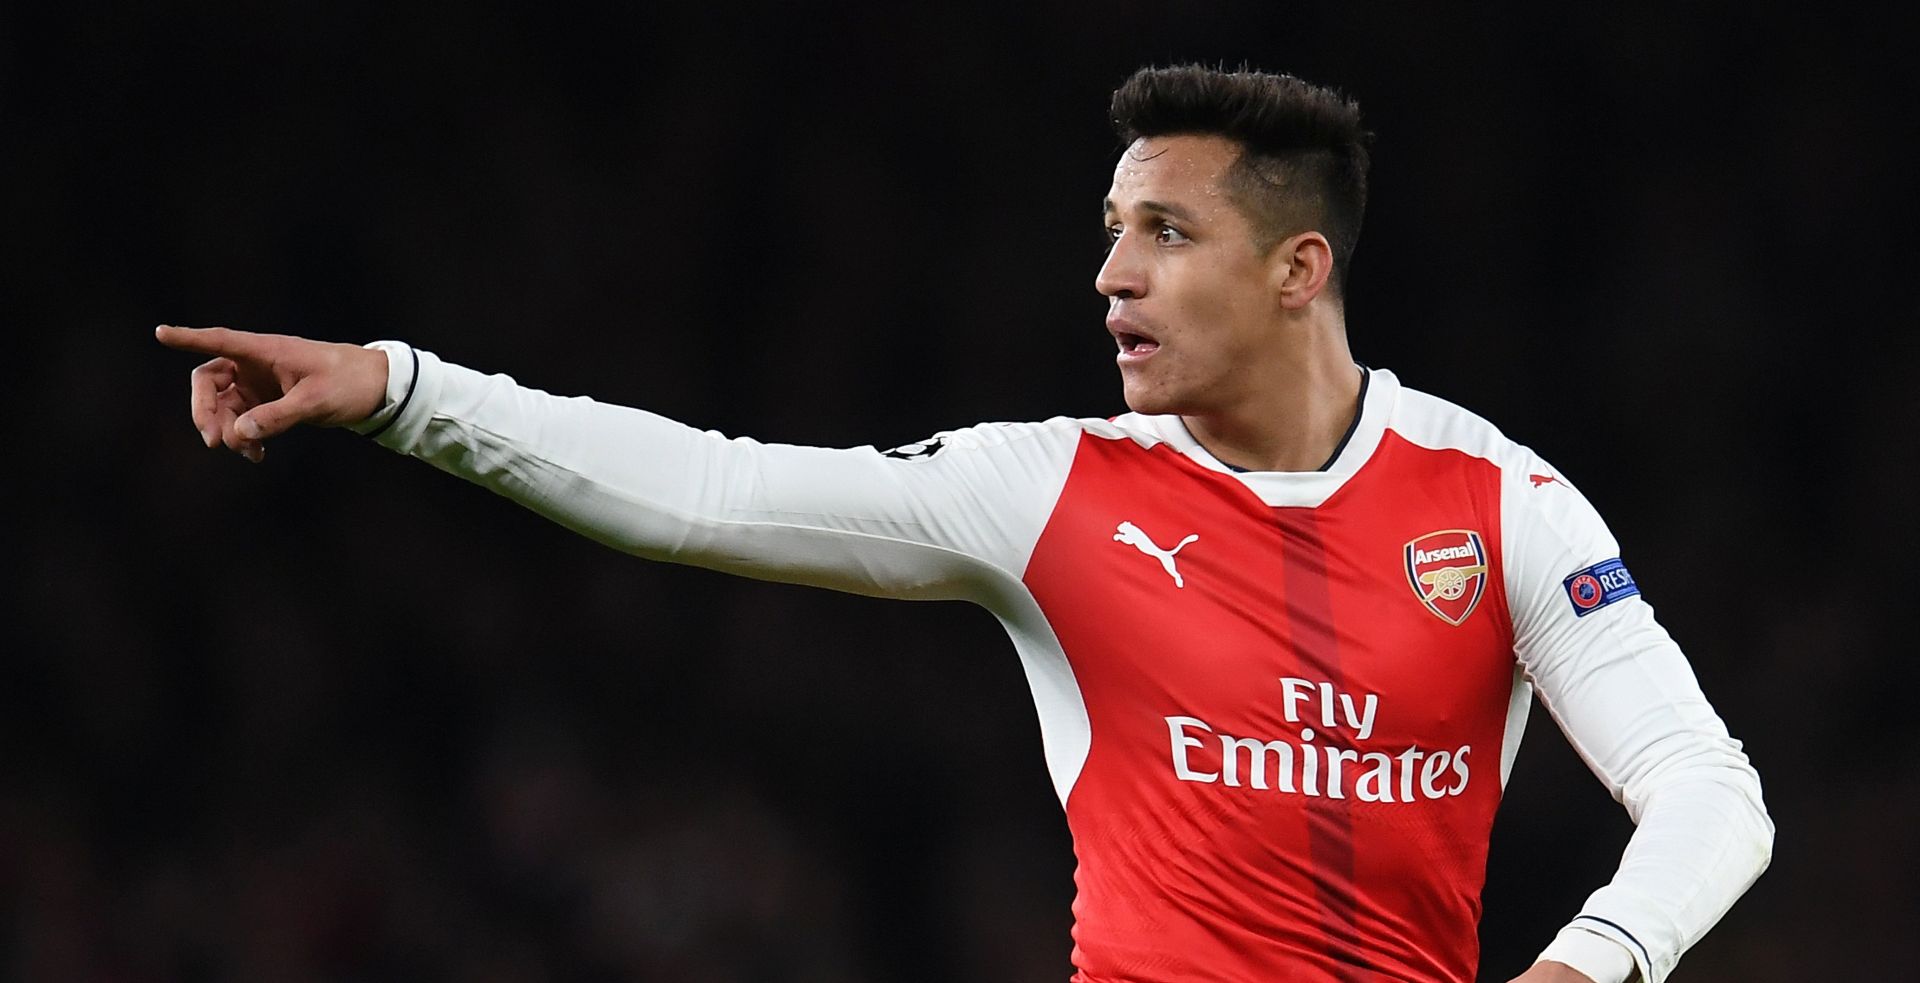 WENGER “Vjerujem da Sanchez želi ostati u Arsenalu”